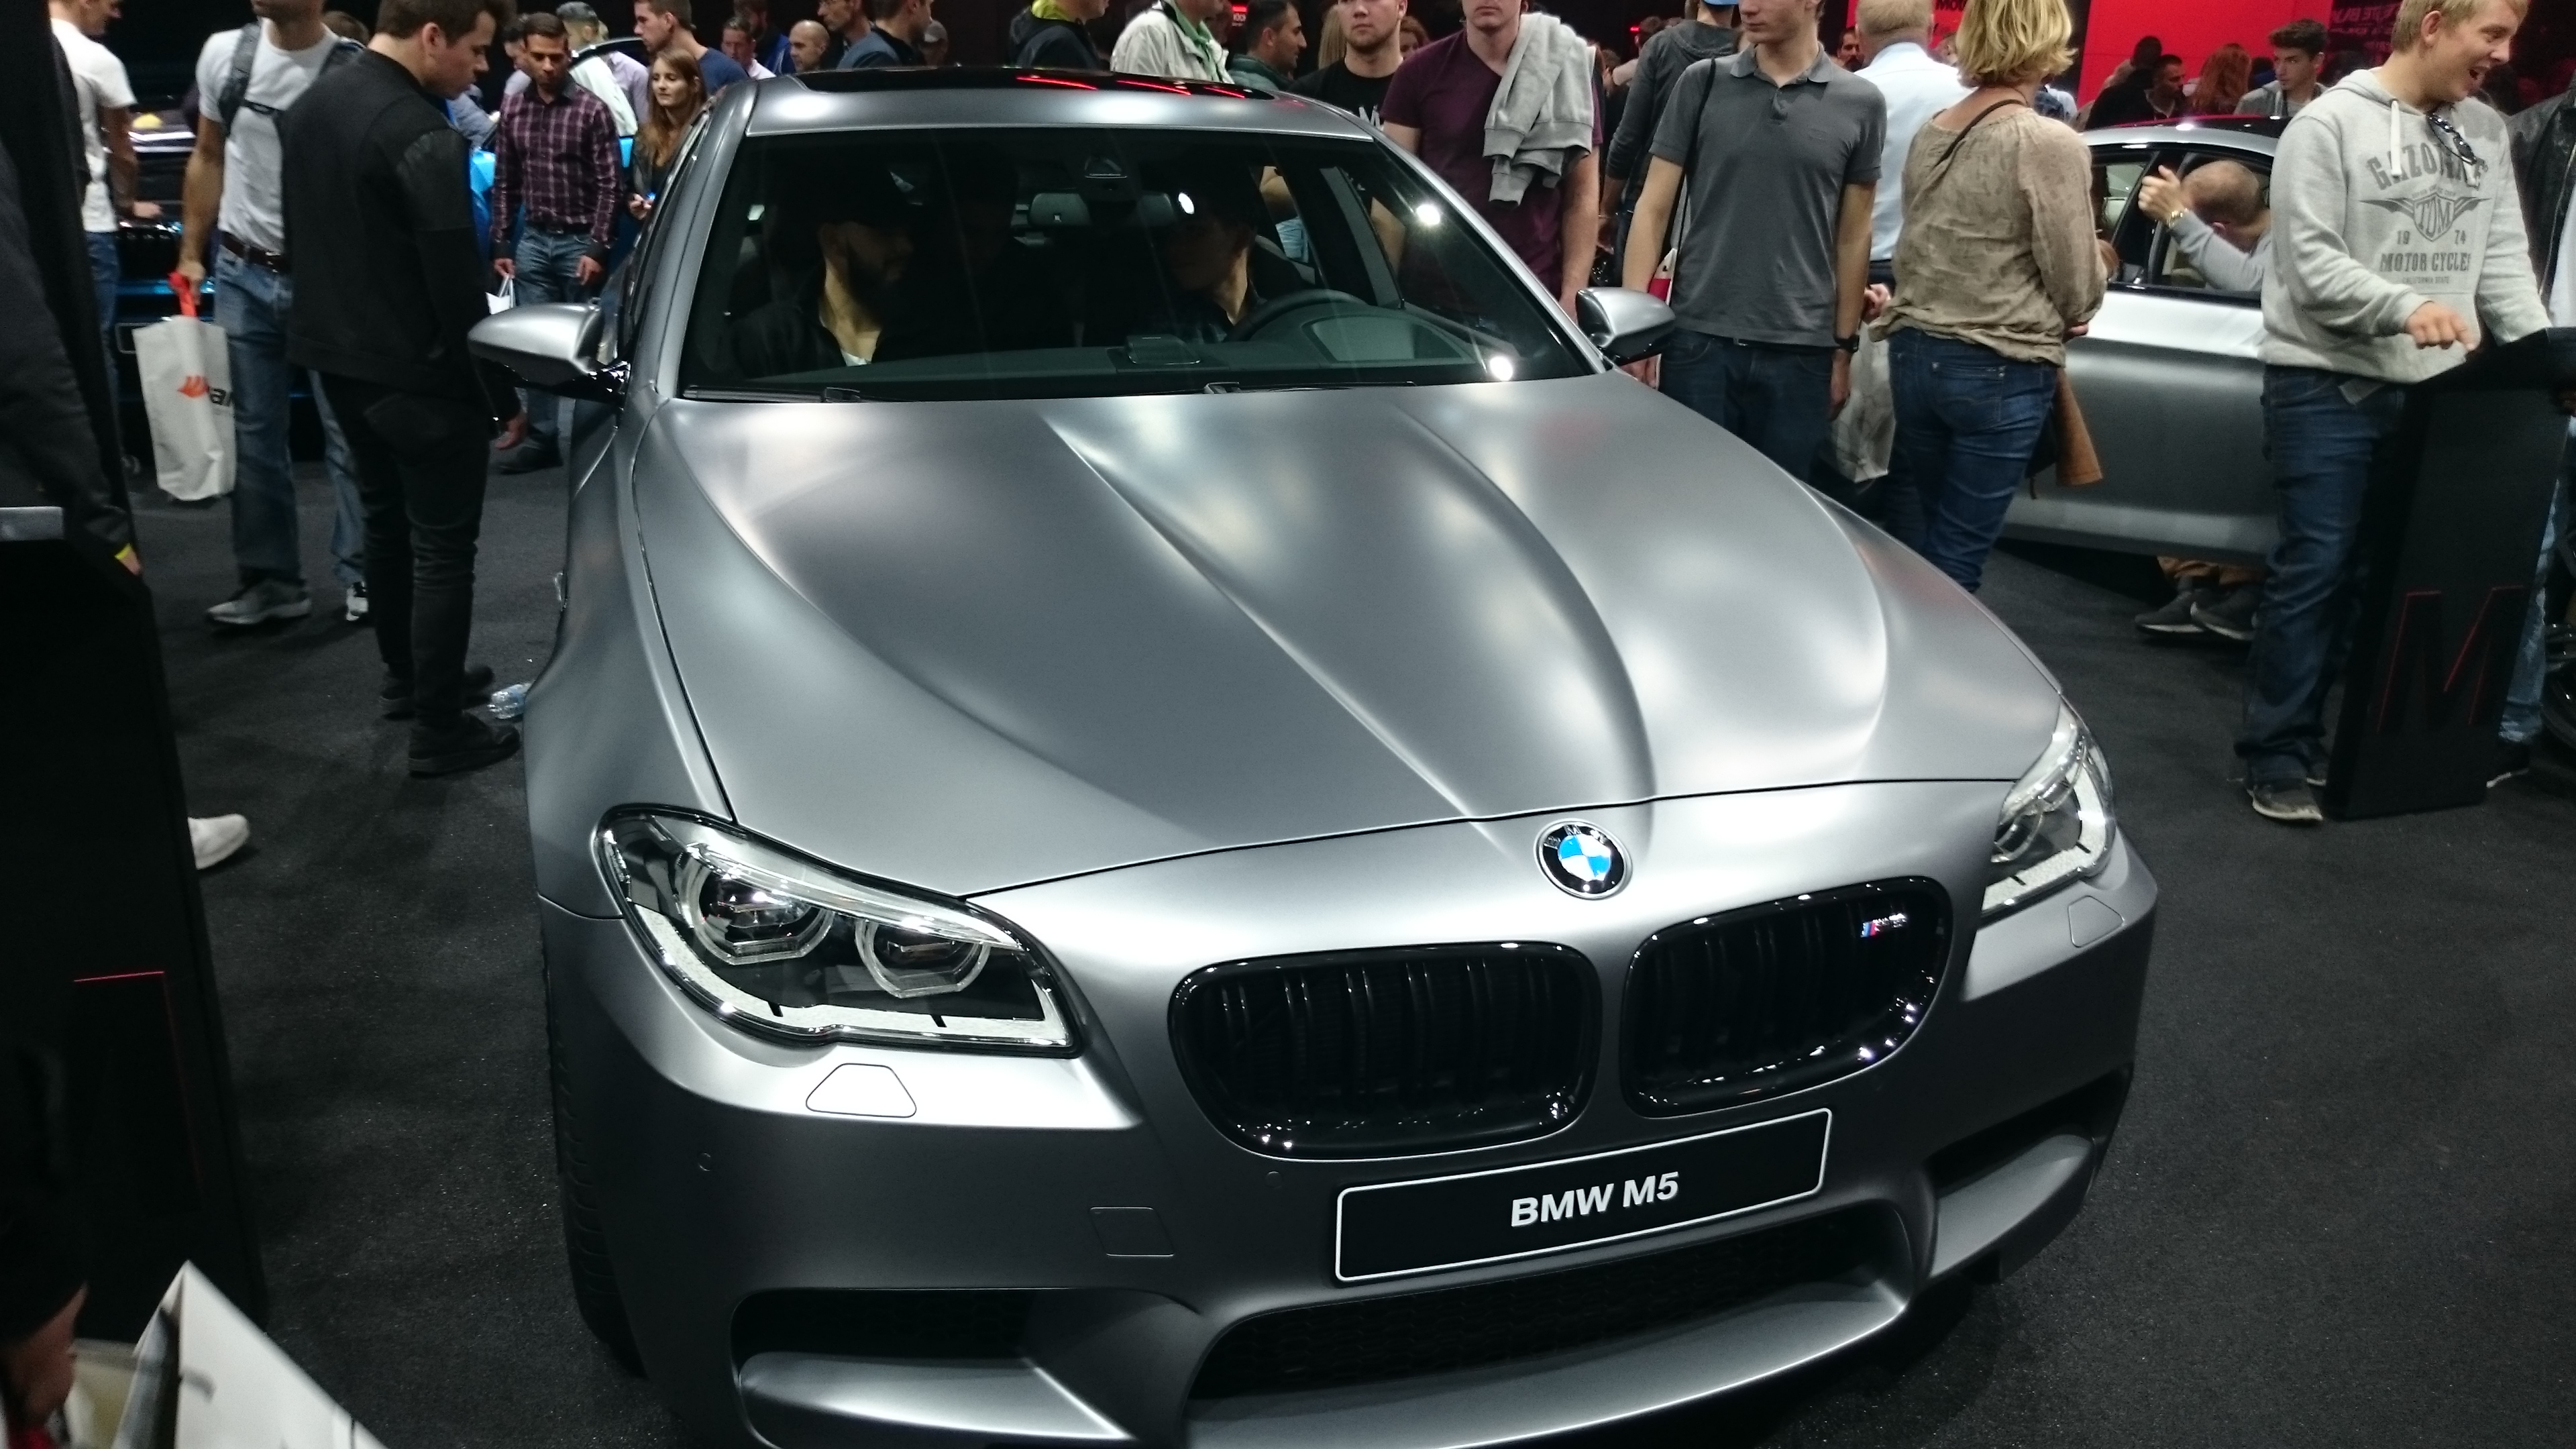 Fotos 360 del BMW M5 #VidePan en #IAA2015